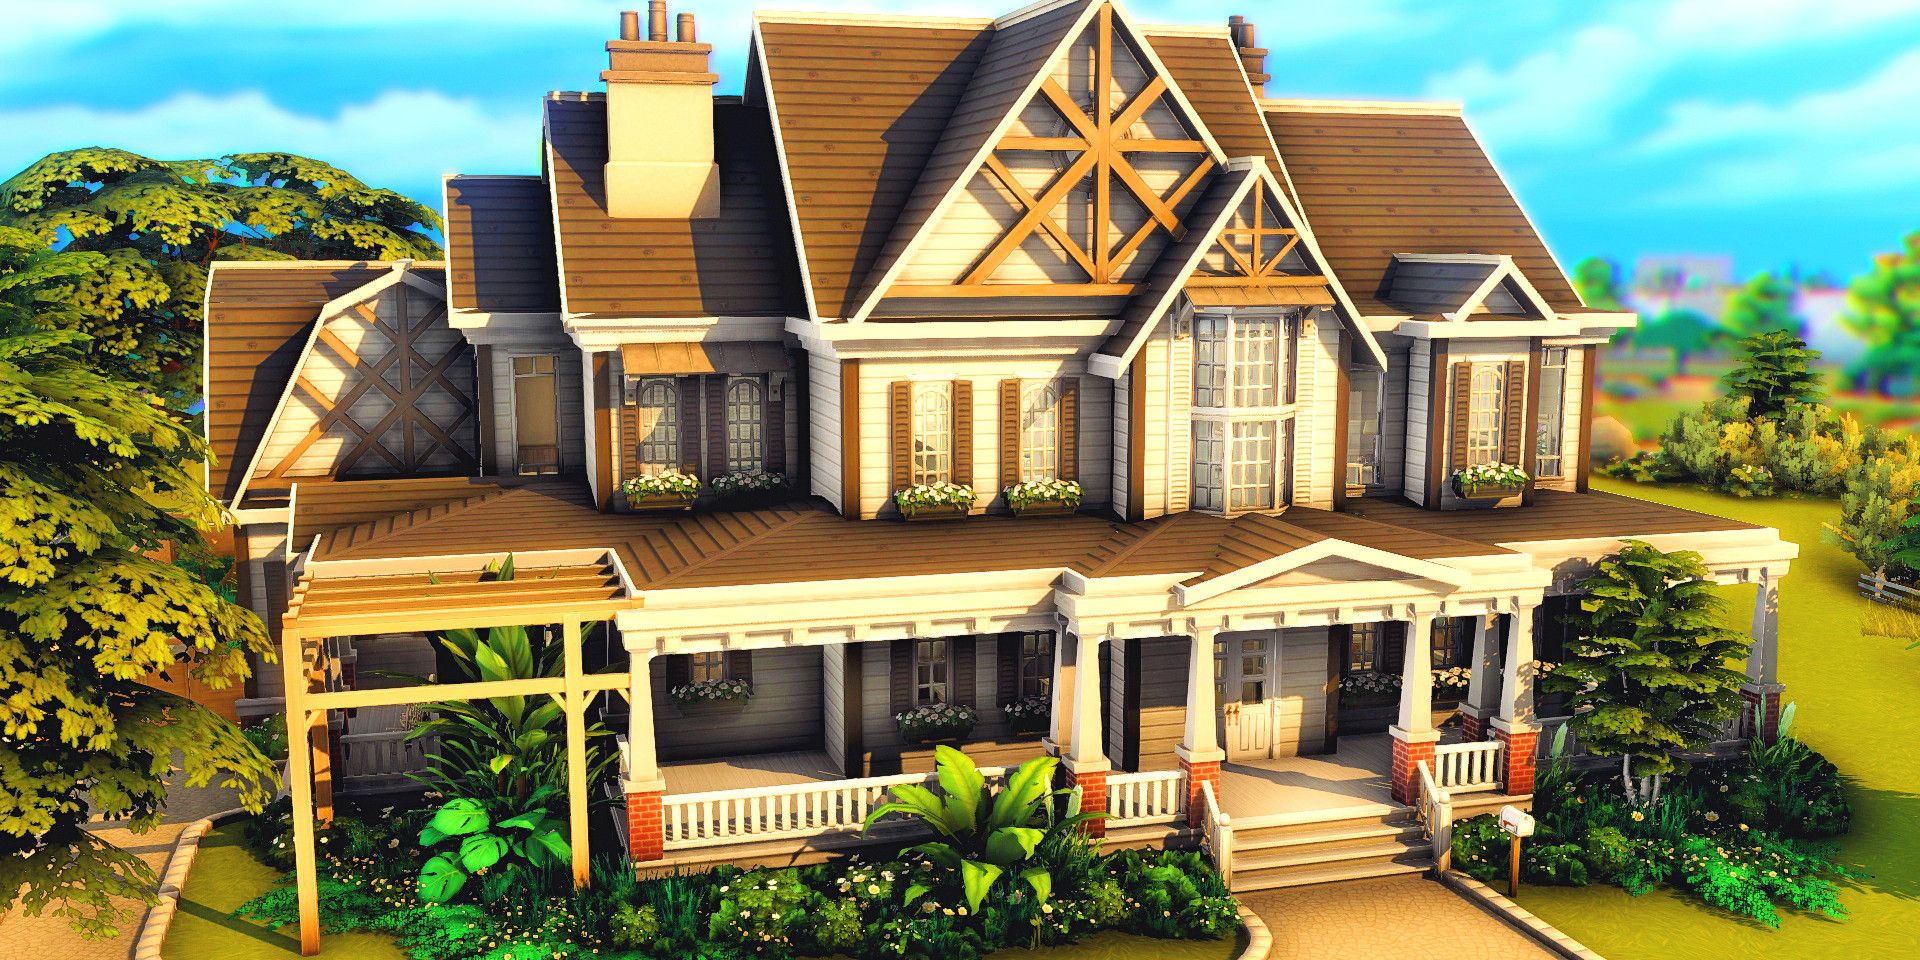 Uma casa no The Sims 4 com um ambiente verdejante